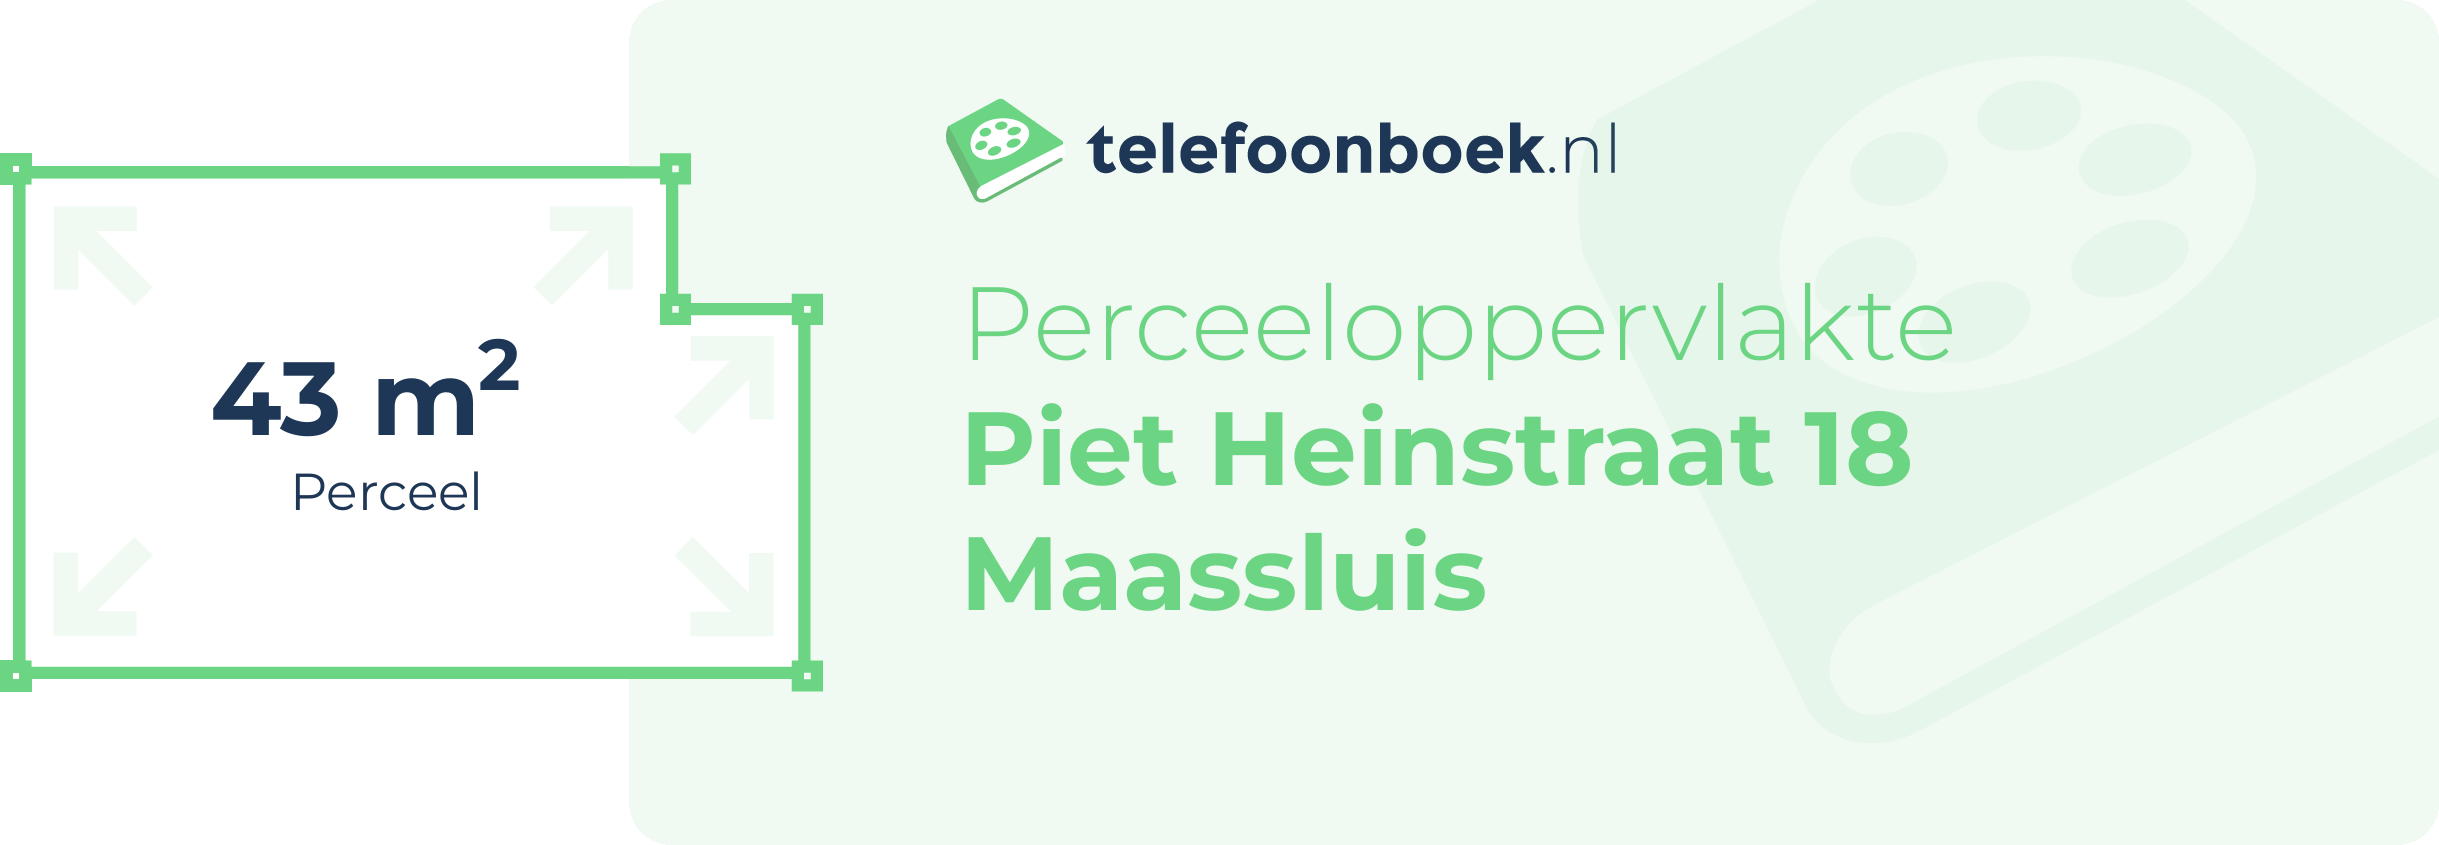 Perceeloppervlakte Piet Heinstraat 18 Maassluis